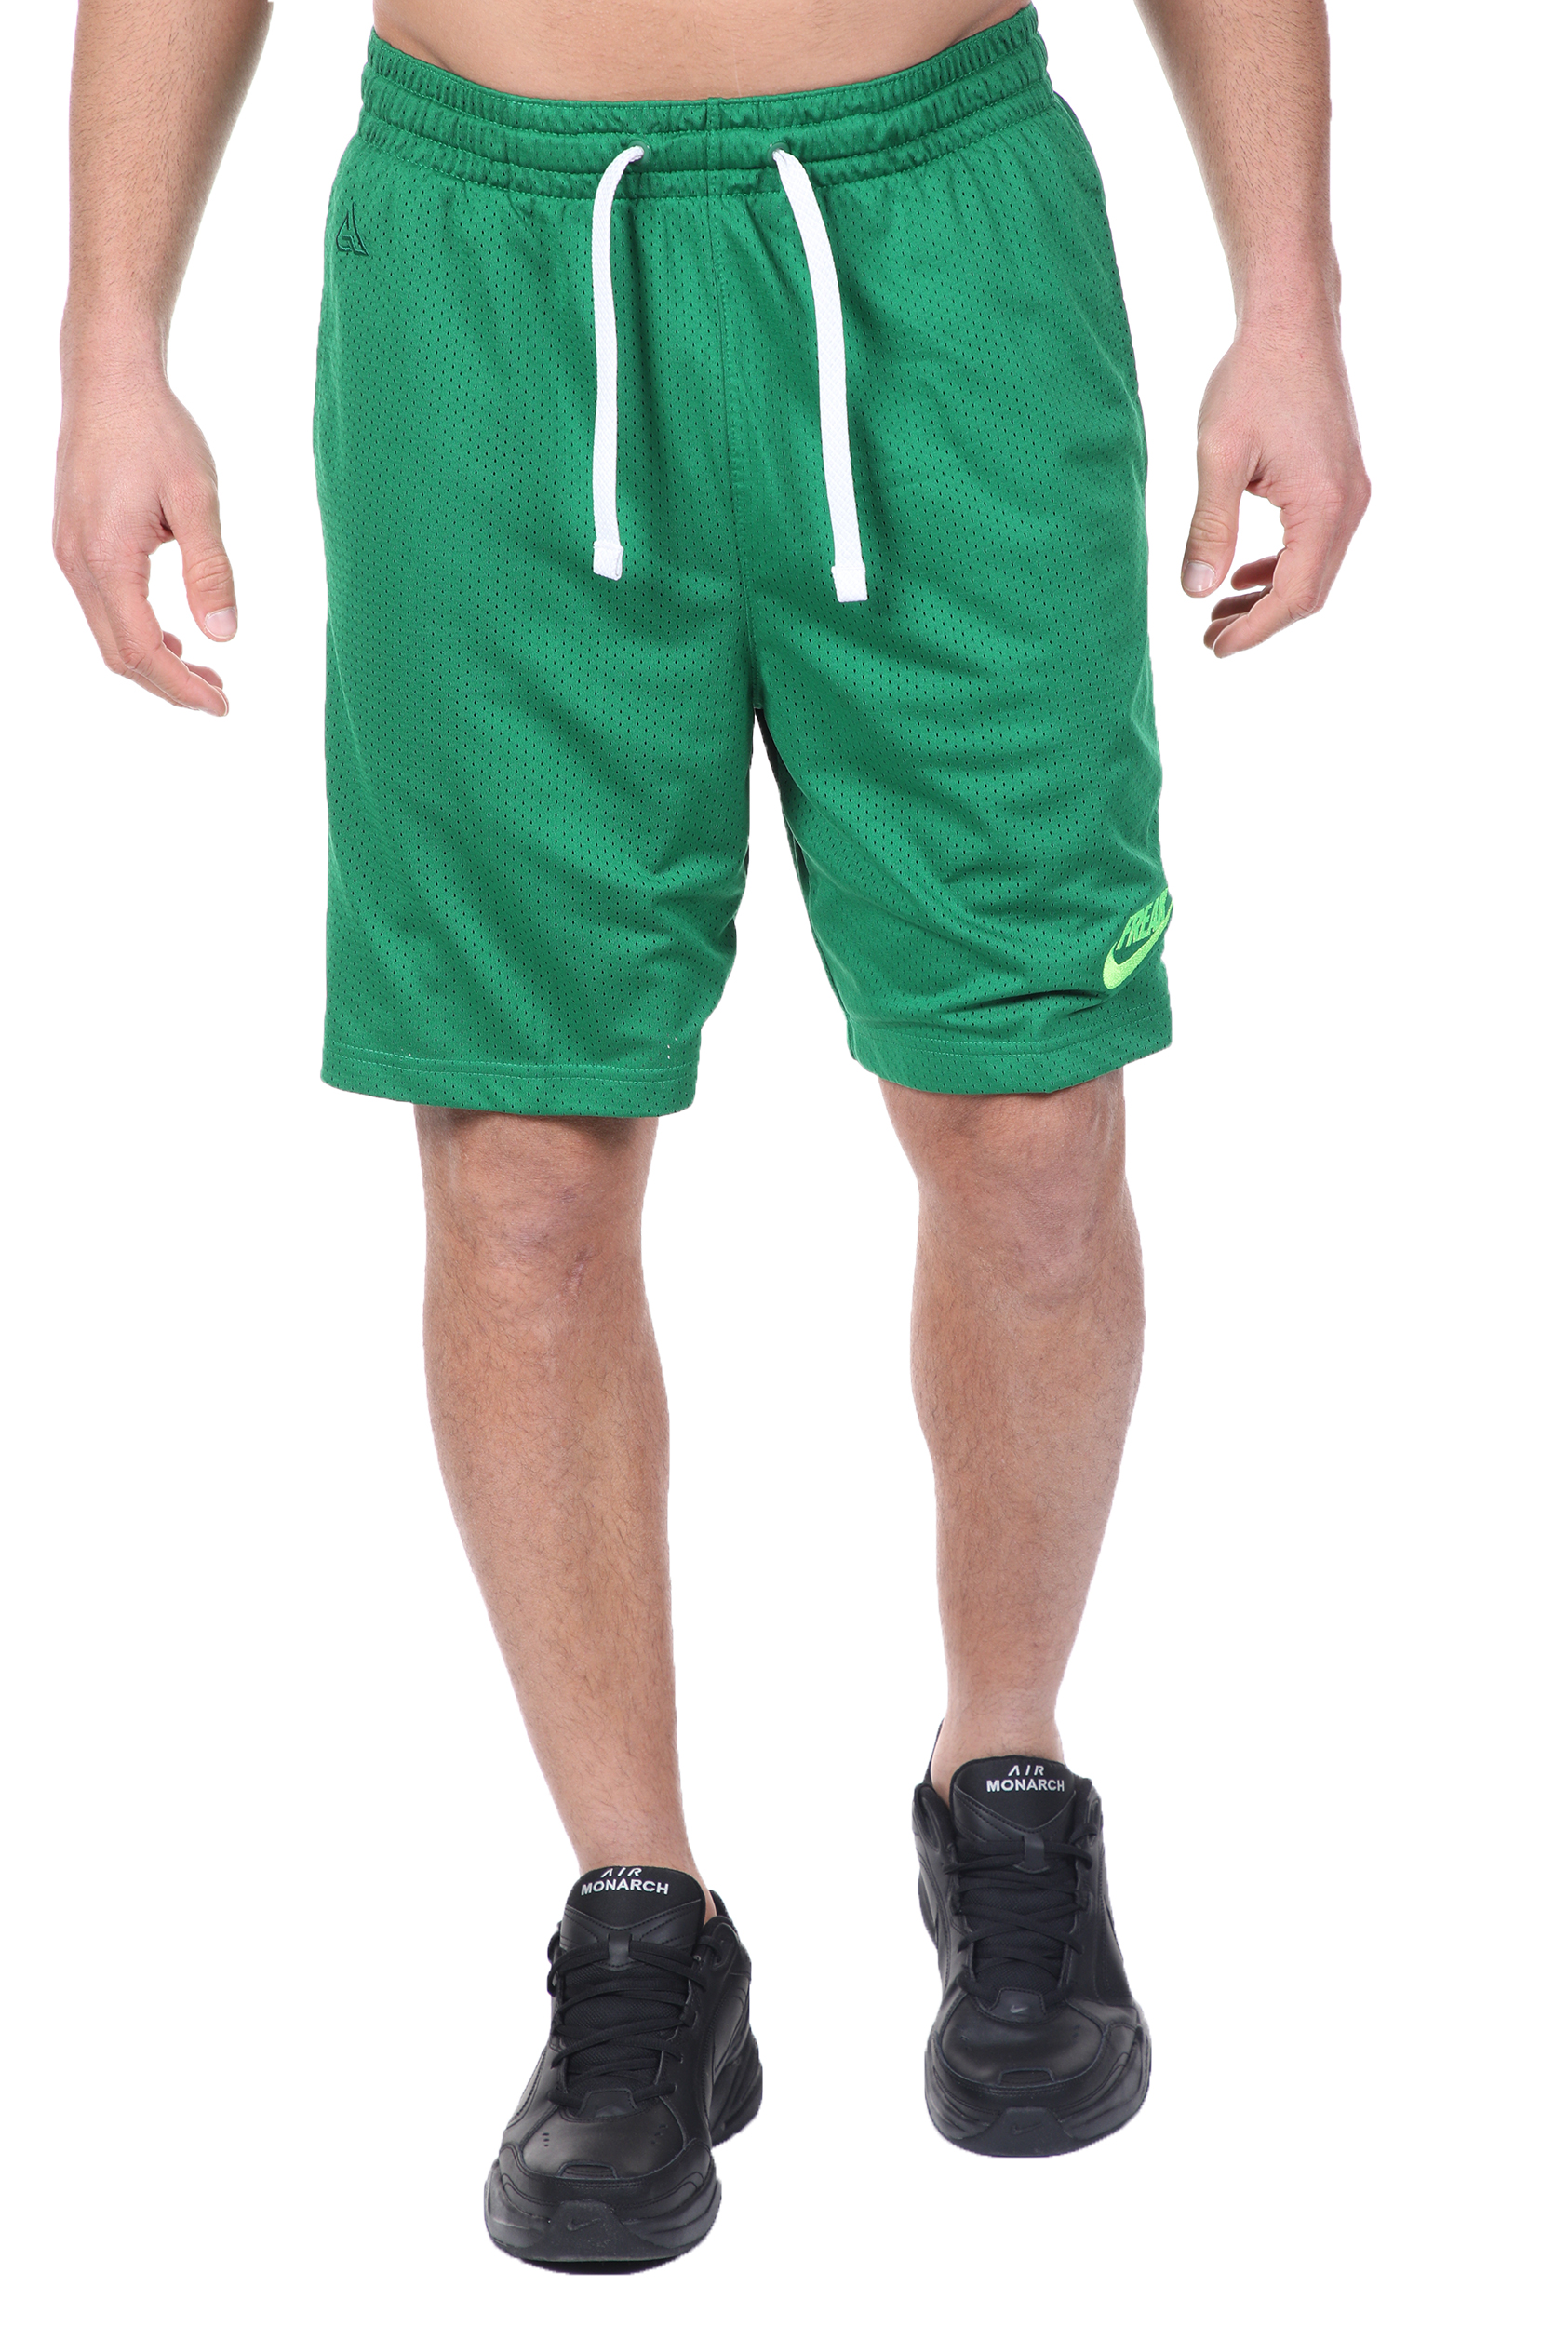 Ανδρικά/Ρούχα/Σορτς-Βερμούδες/Αθλητικά NIKE - Ανδρική βερμούδα basketball NIKE FREAK GIANNIS πράσινη